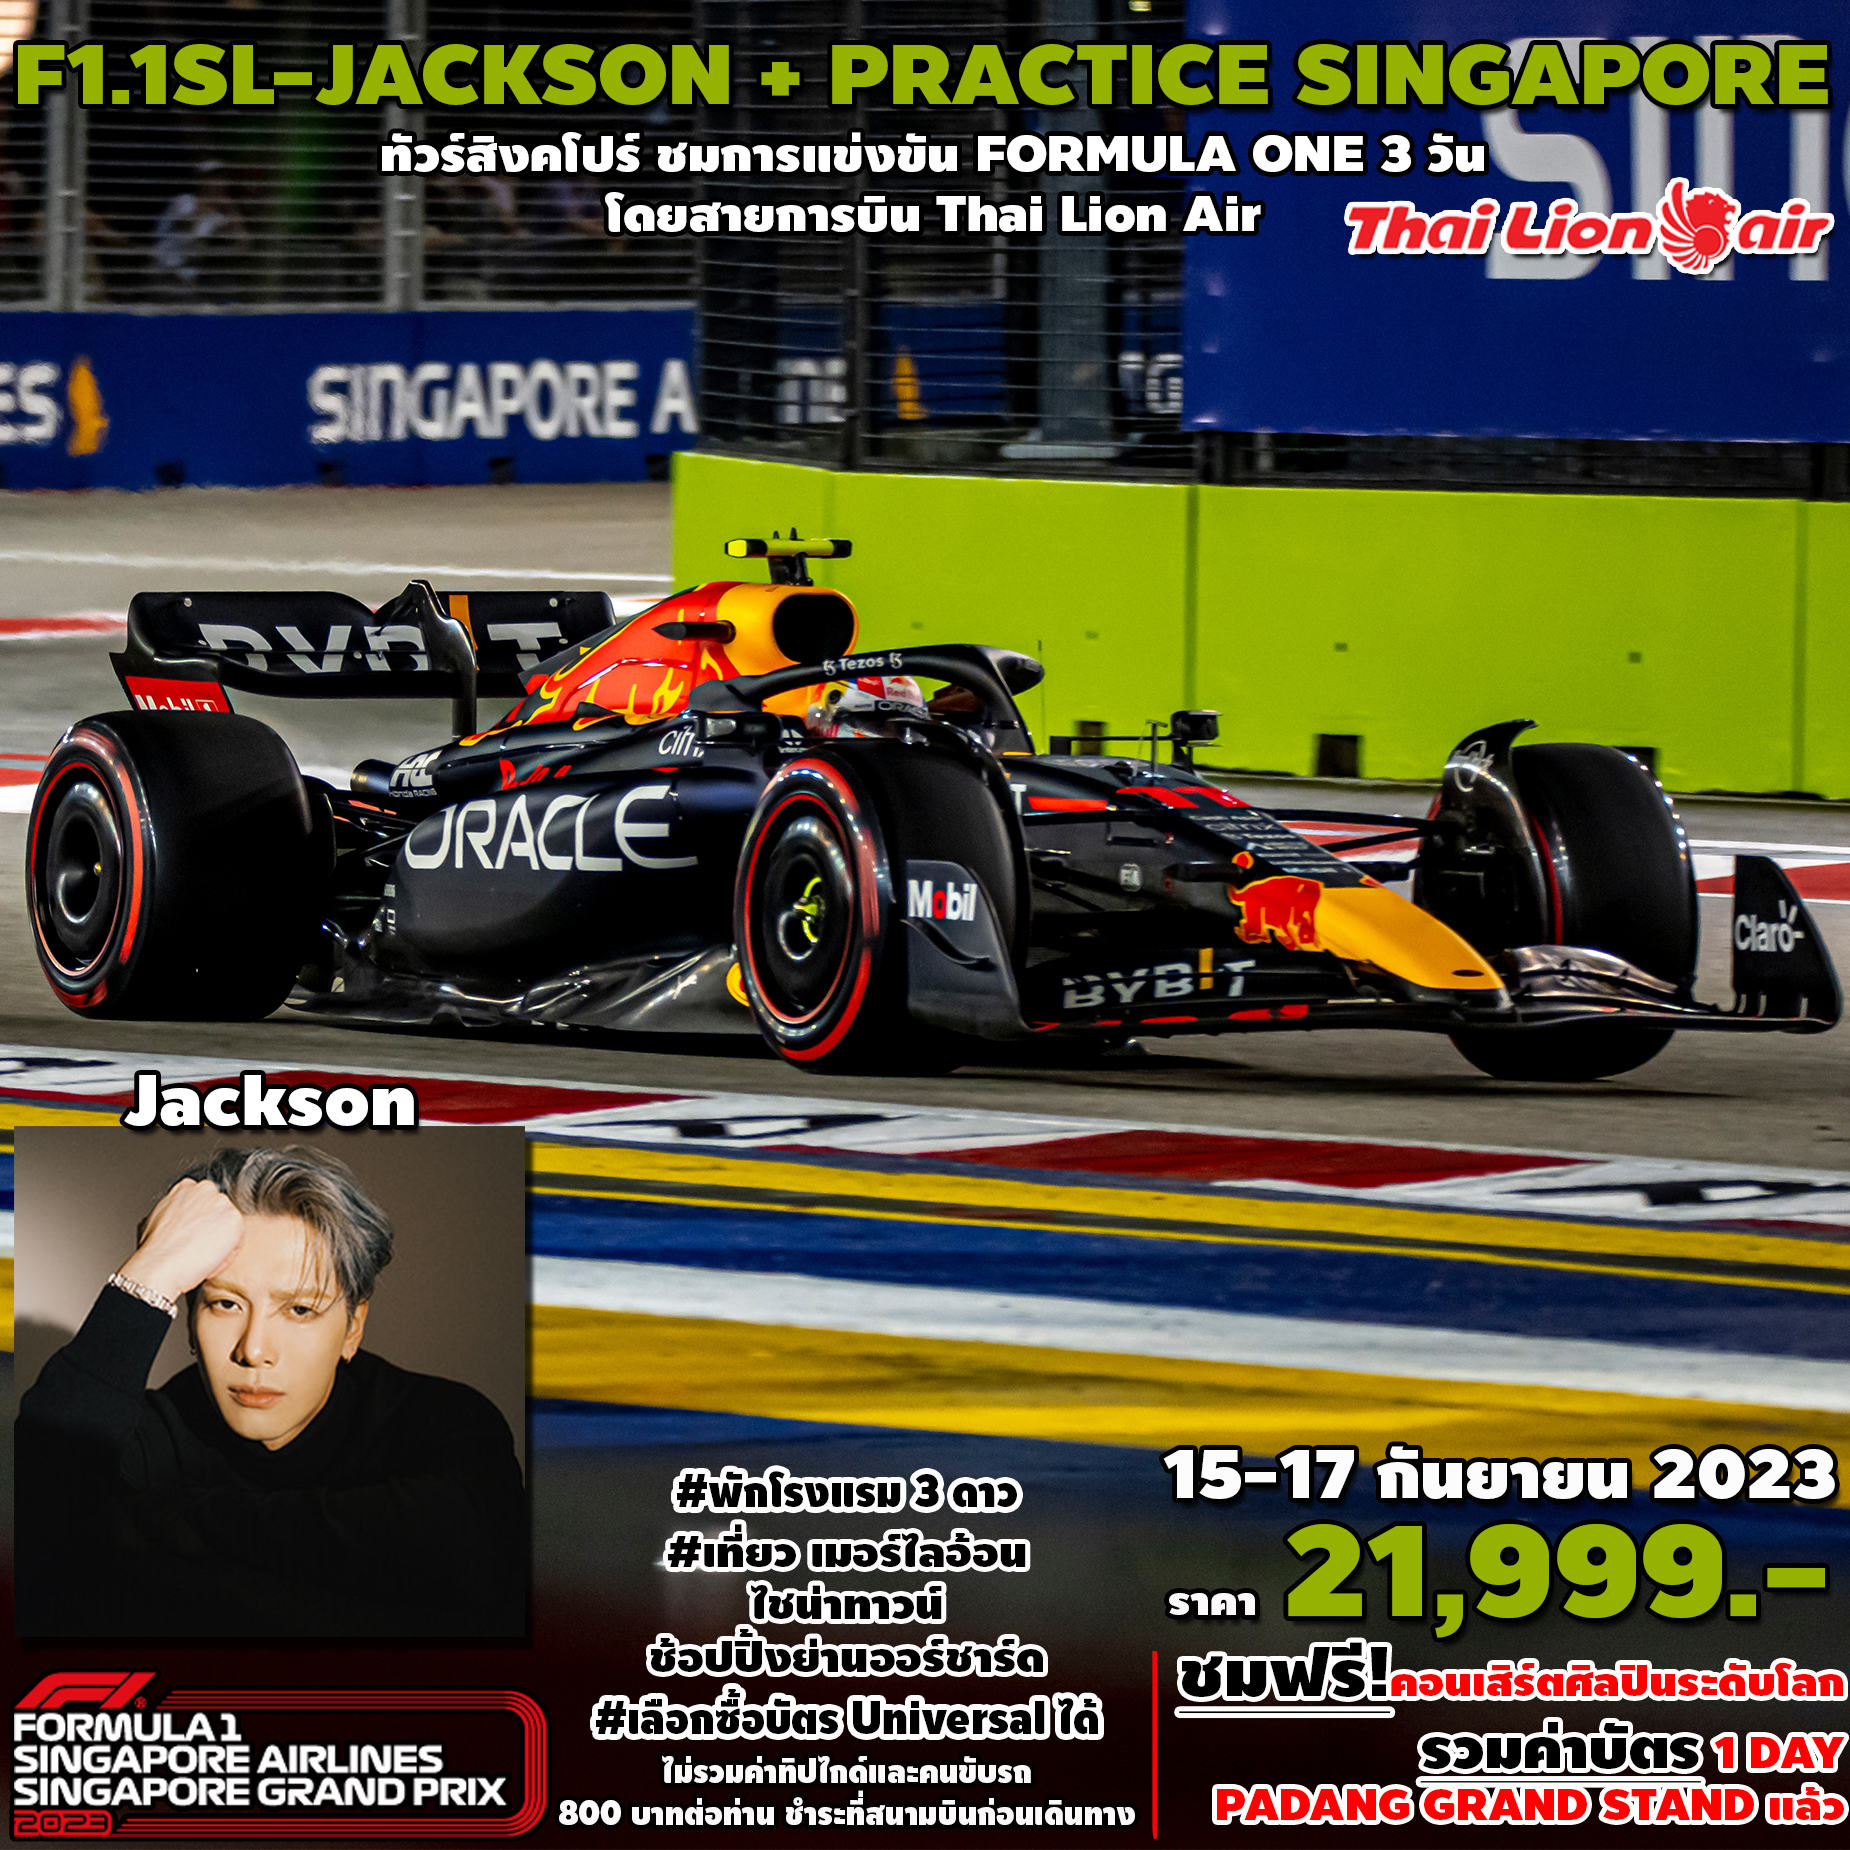 SPHZ-F1.1SL JACKSON WANG+PRACTICE 3D2N (SL) 15-17 SEP 2023